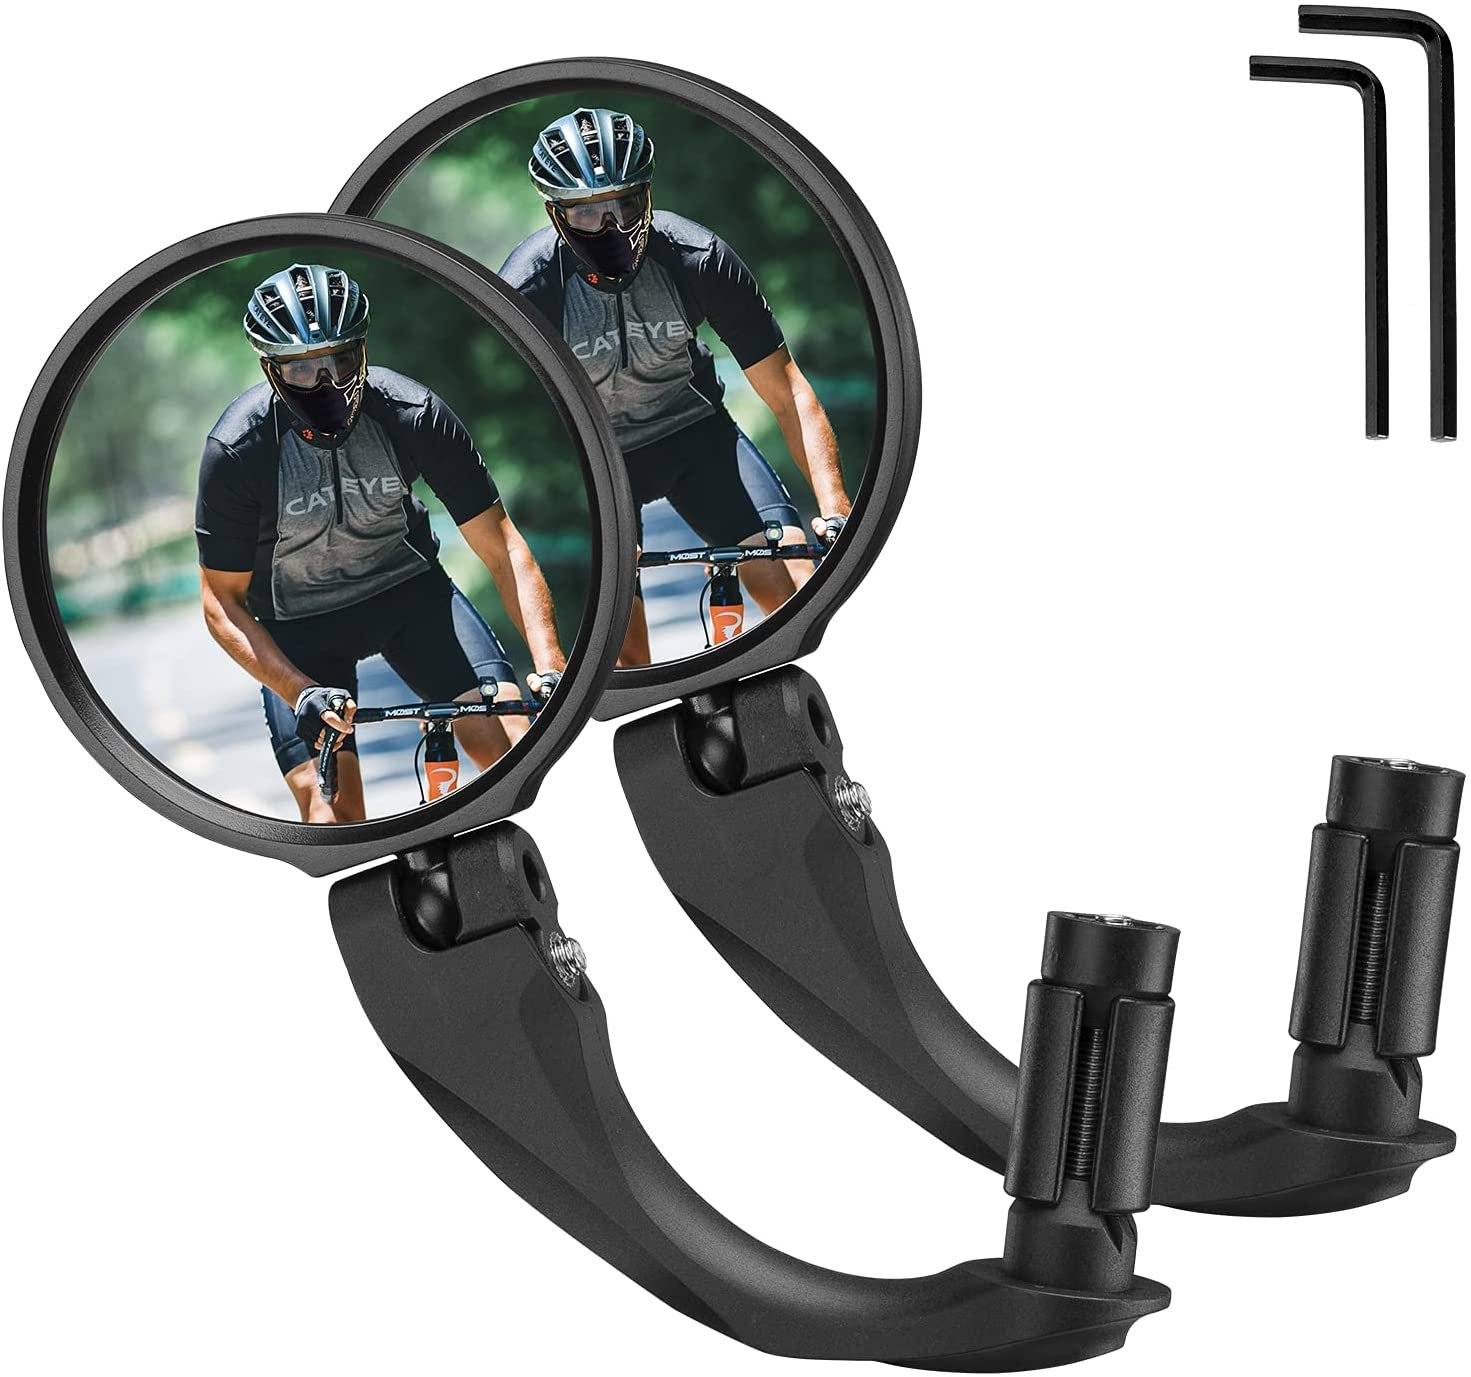 Зеркало велосипедное RockBros, акриловое, заднего вида, круглое 7,5 см, длина ручки 9 см, черный, FK-272 зеркало m wave круглое 1 8 панорам 3 степ своб жестк торцевое 100 черное 6 647335